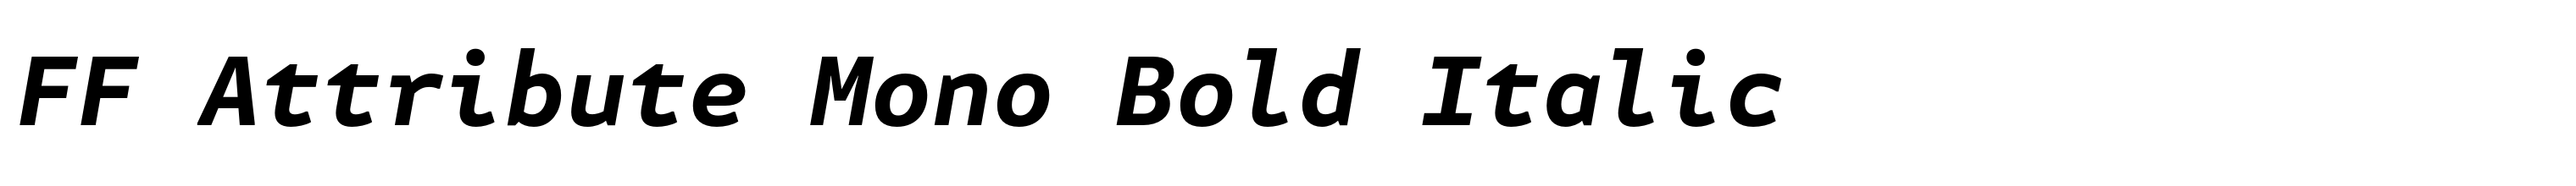 FF Attribute Mono Bold Italic